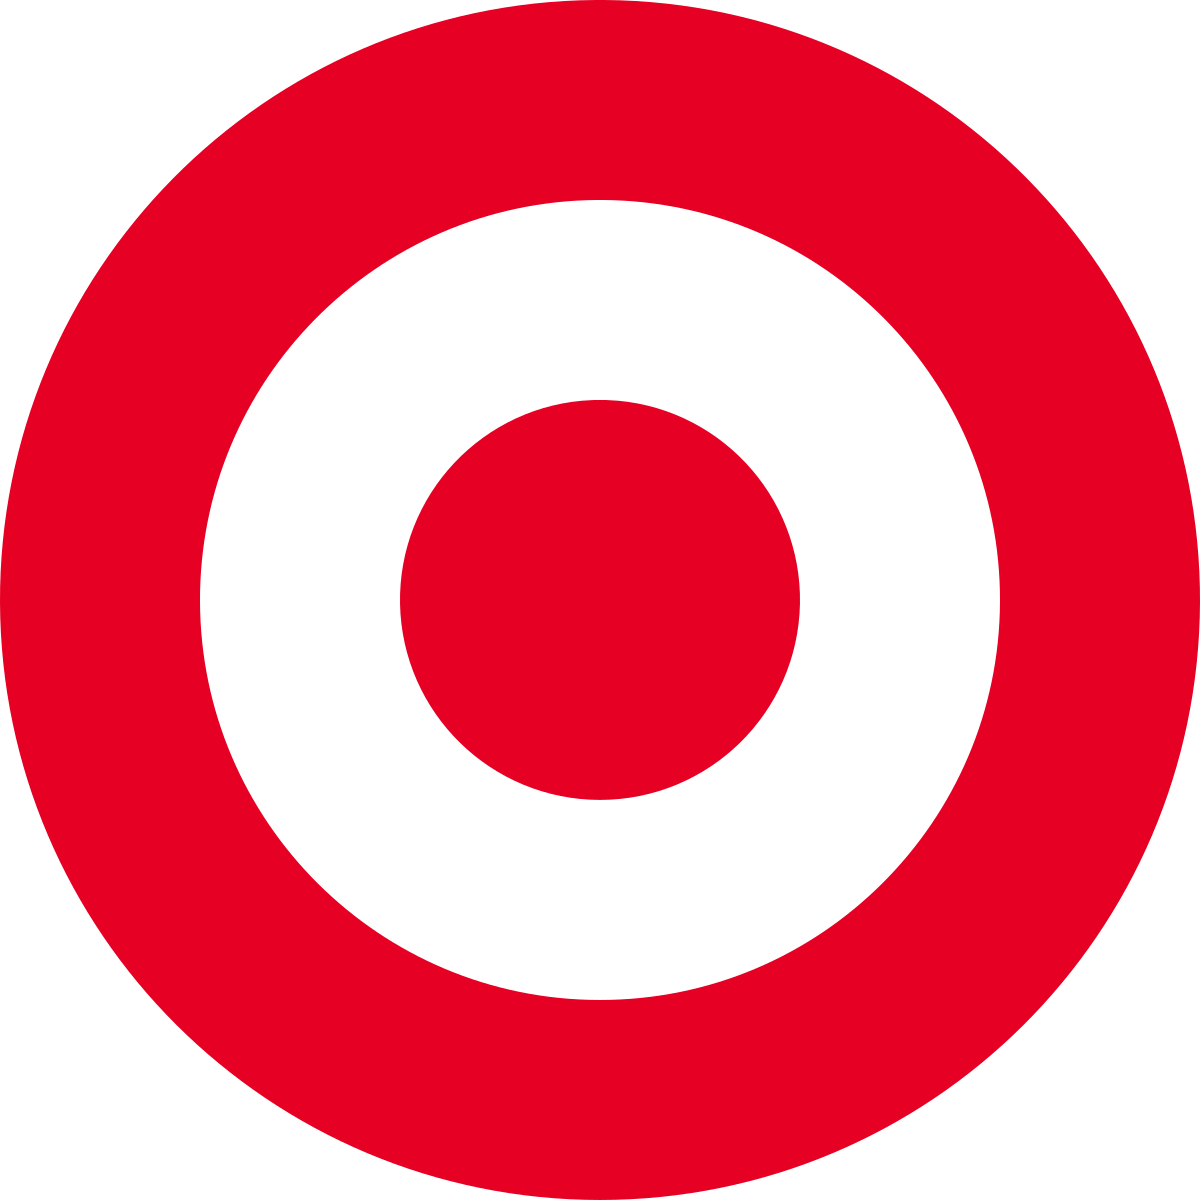 Old Target Logo - Target Corporation